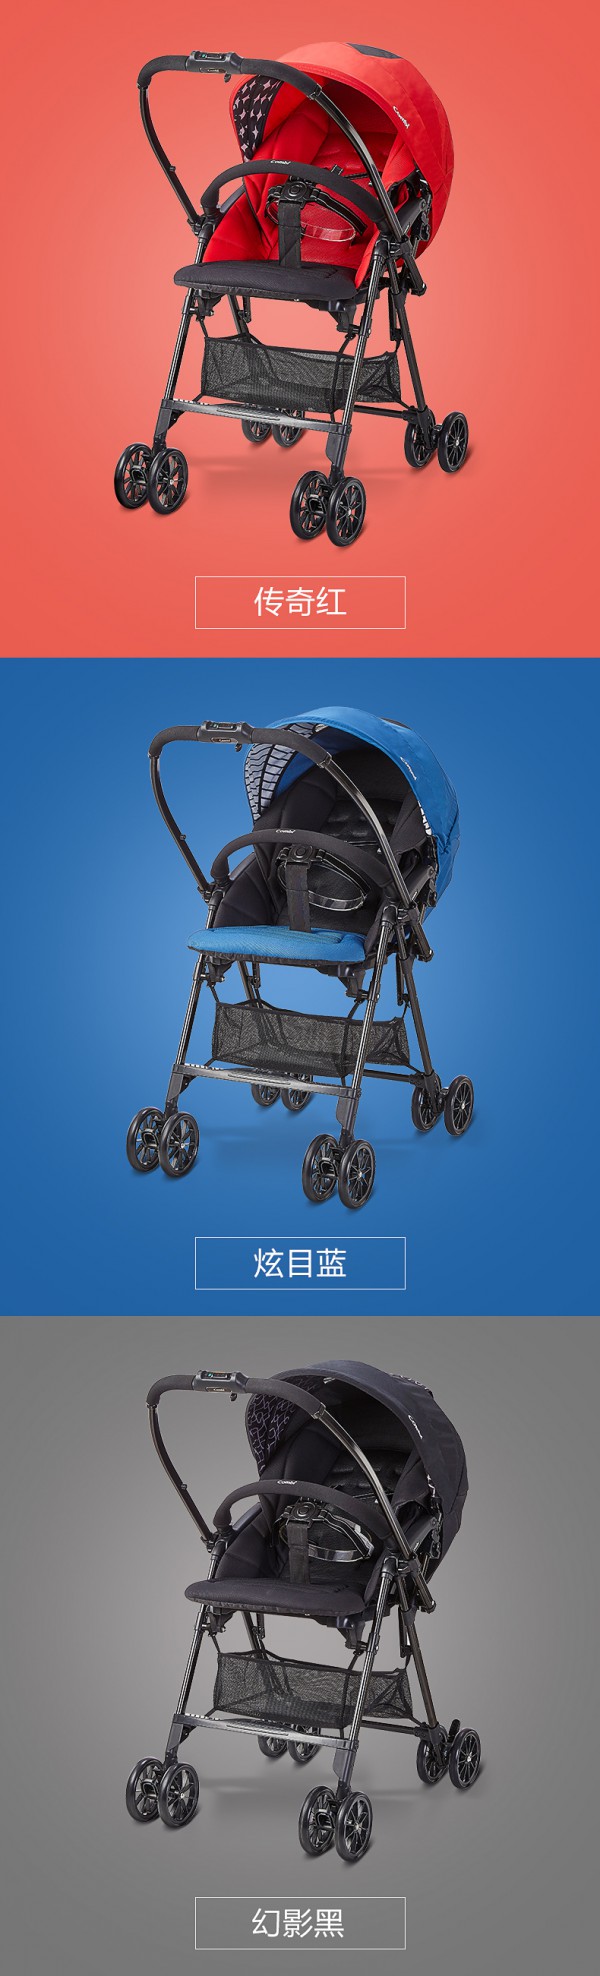 什么牌子的婴儿手推车好 Combi康贝清舒Ⅱ代婴儿手推车好吗